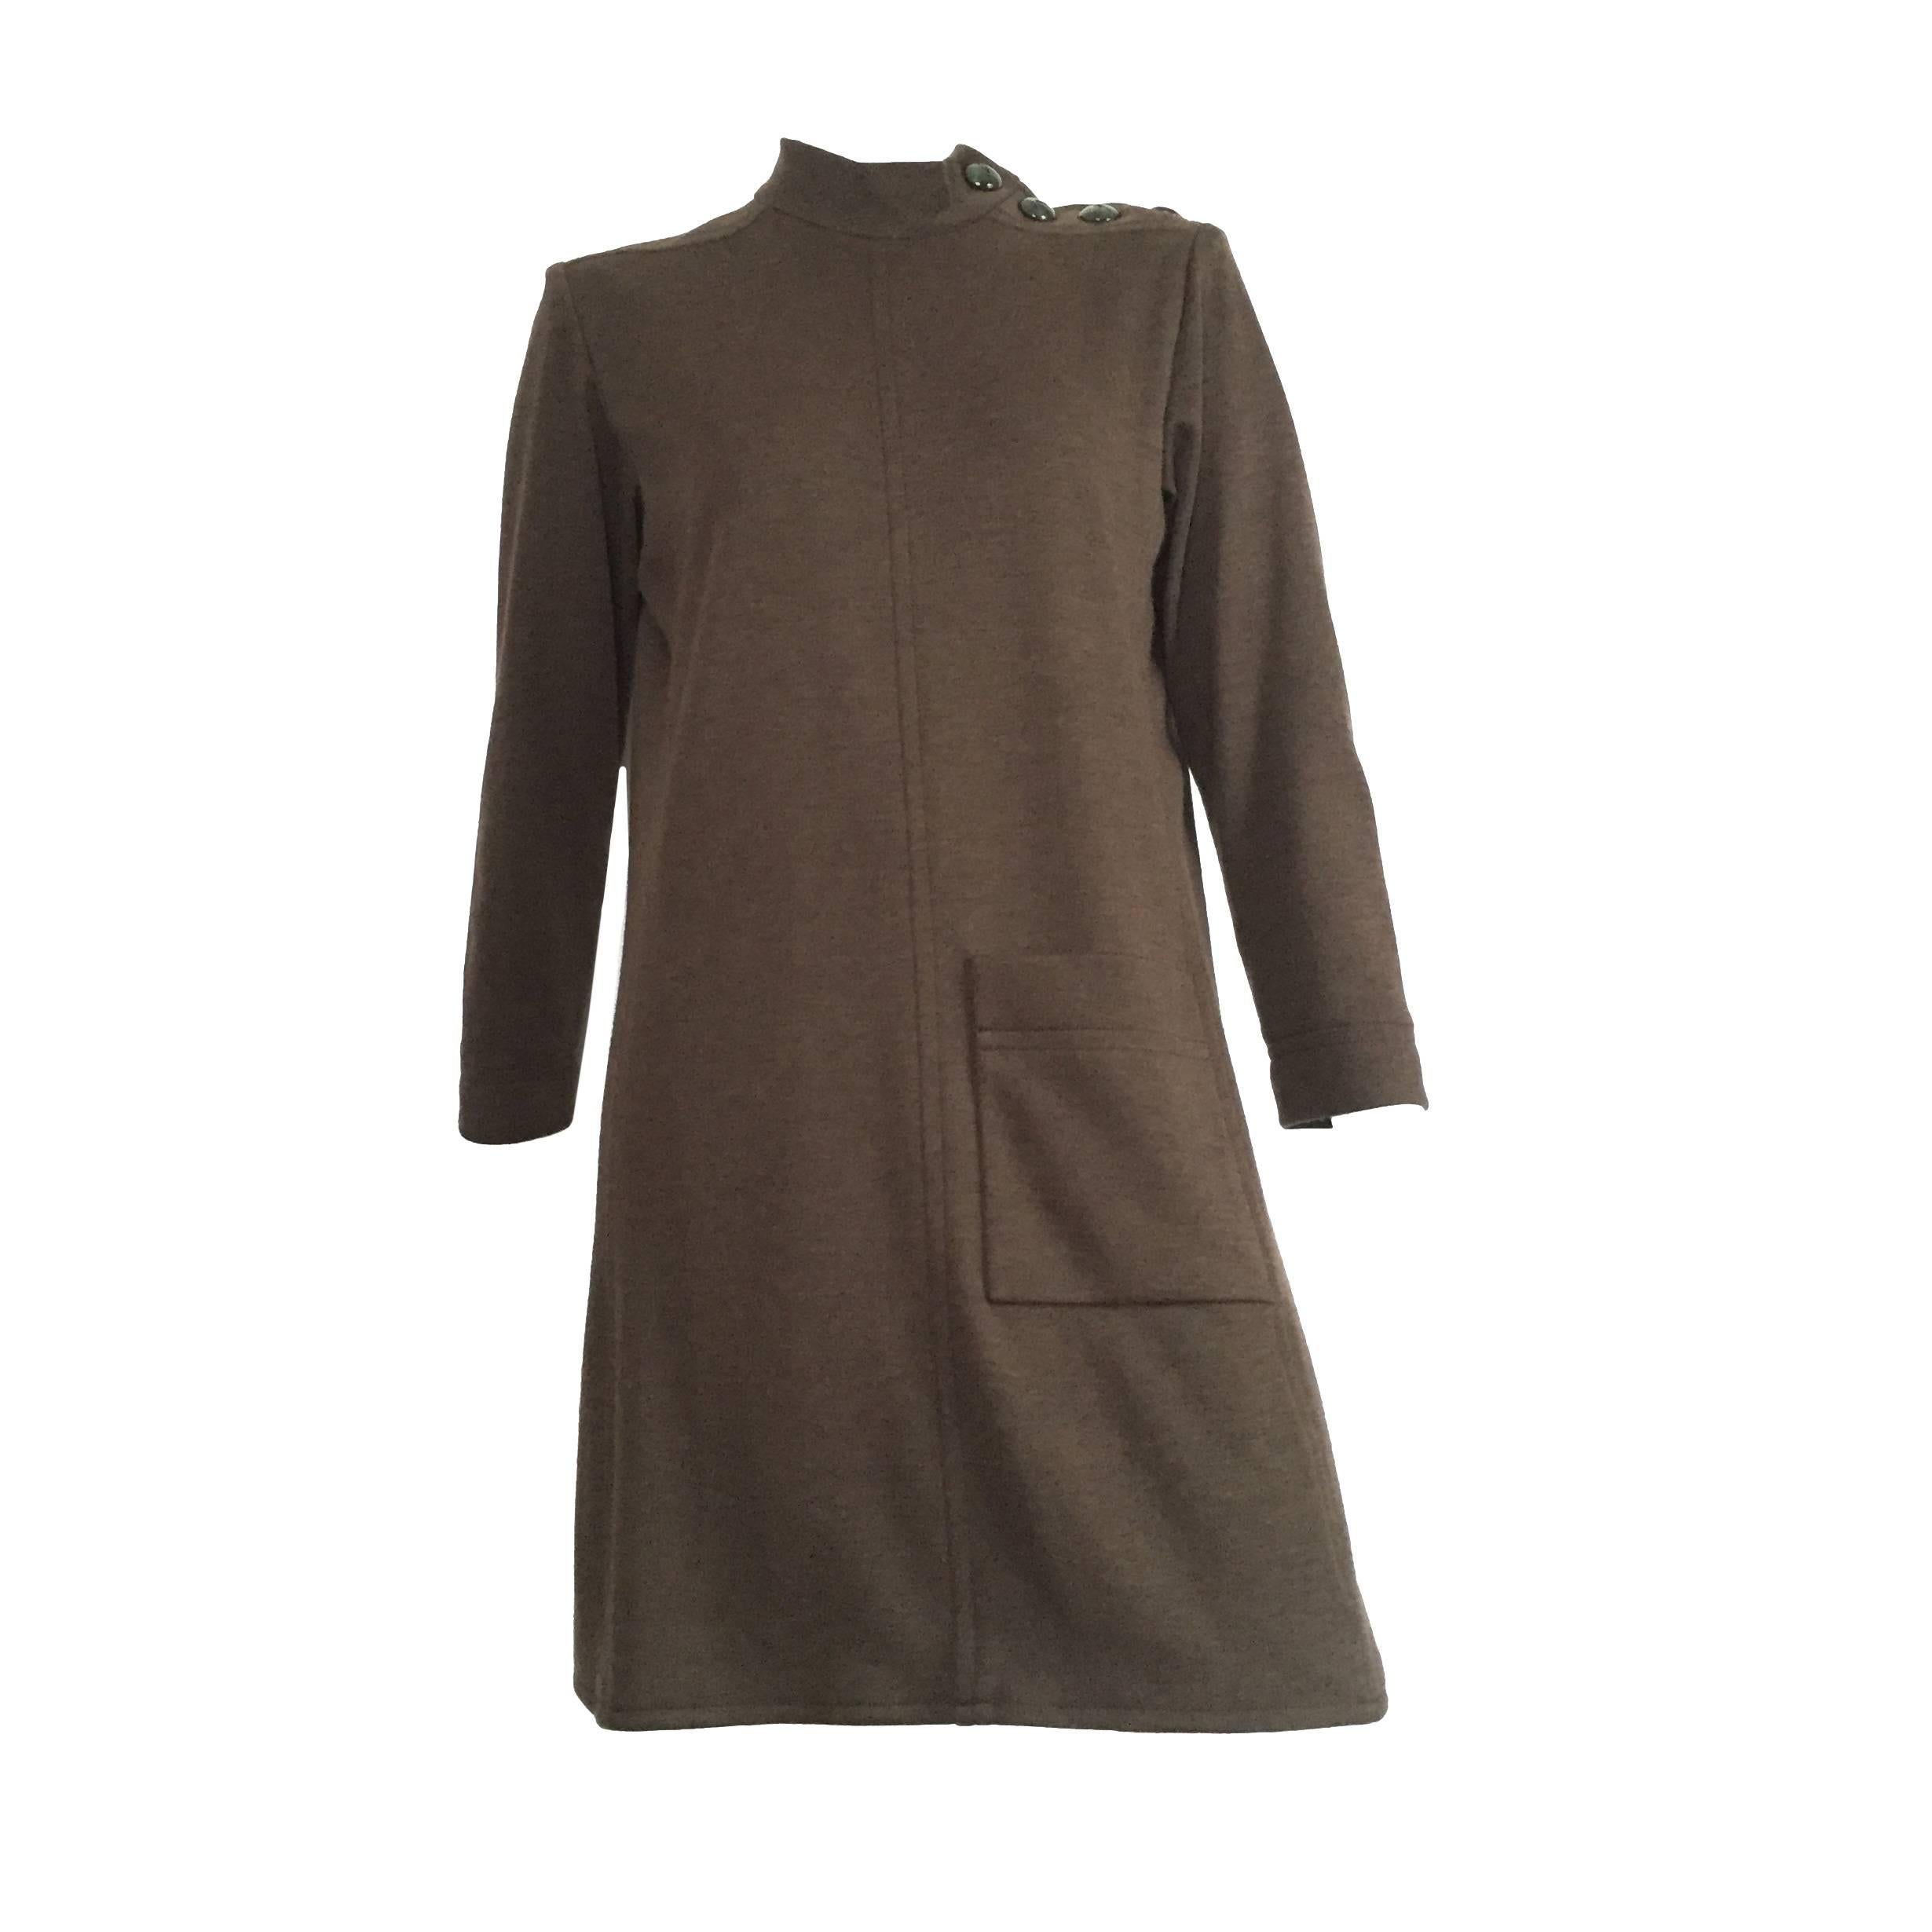 Yves Saint Laurent Rive Gauche Size 6 - 8 Cashmere Olive MOD Dress, 1990s  For Sale